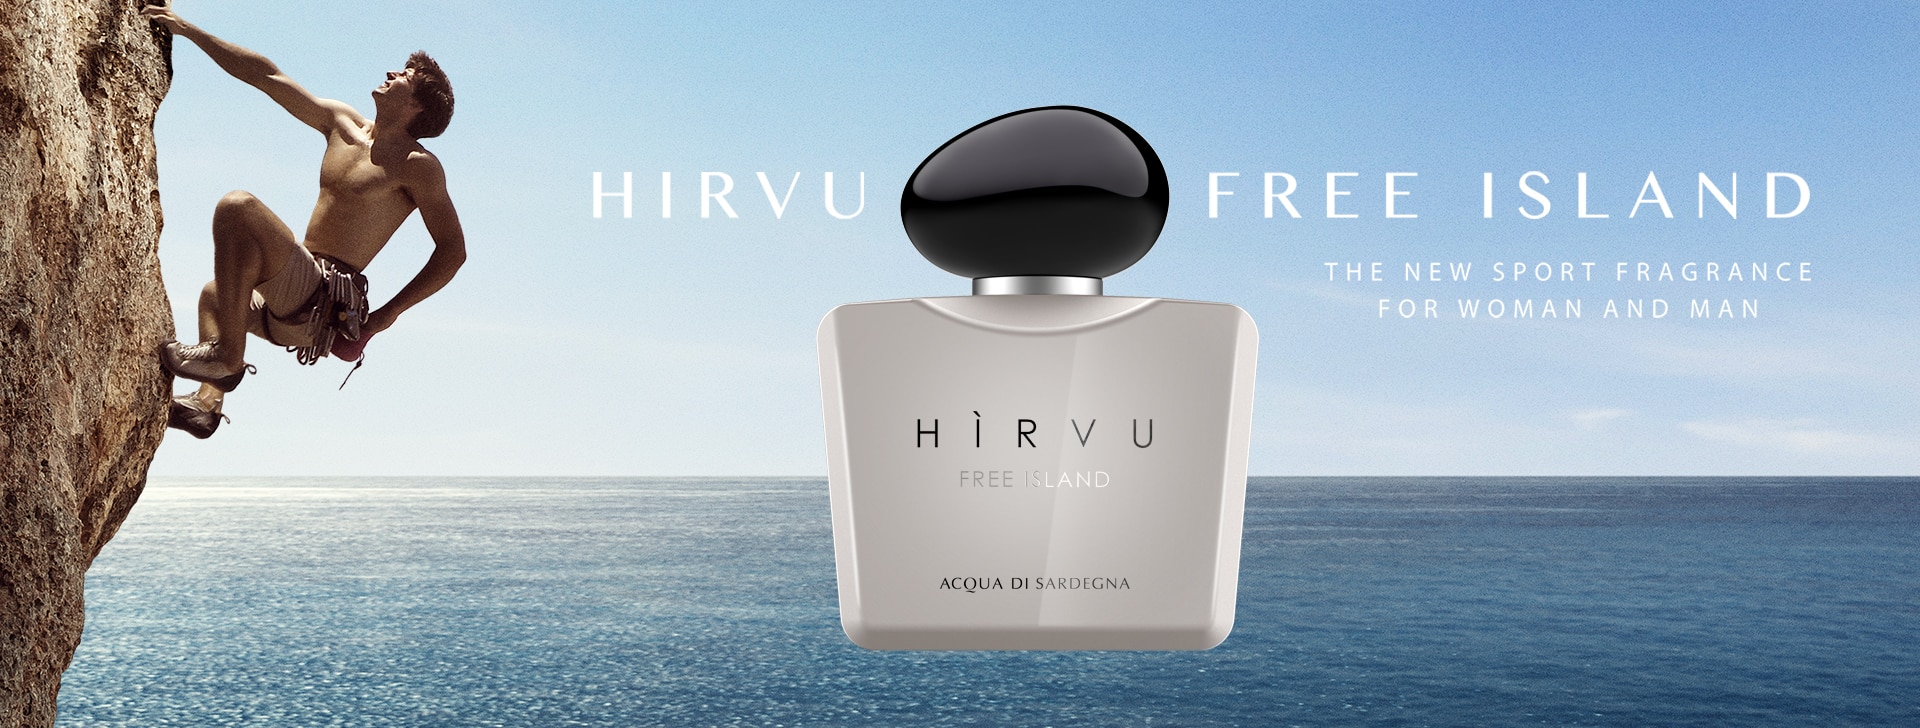 Acqua Di Sardegna Perfumes - Hirvu Perfume